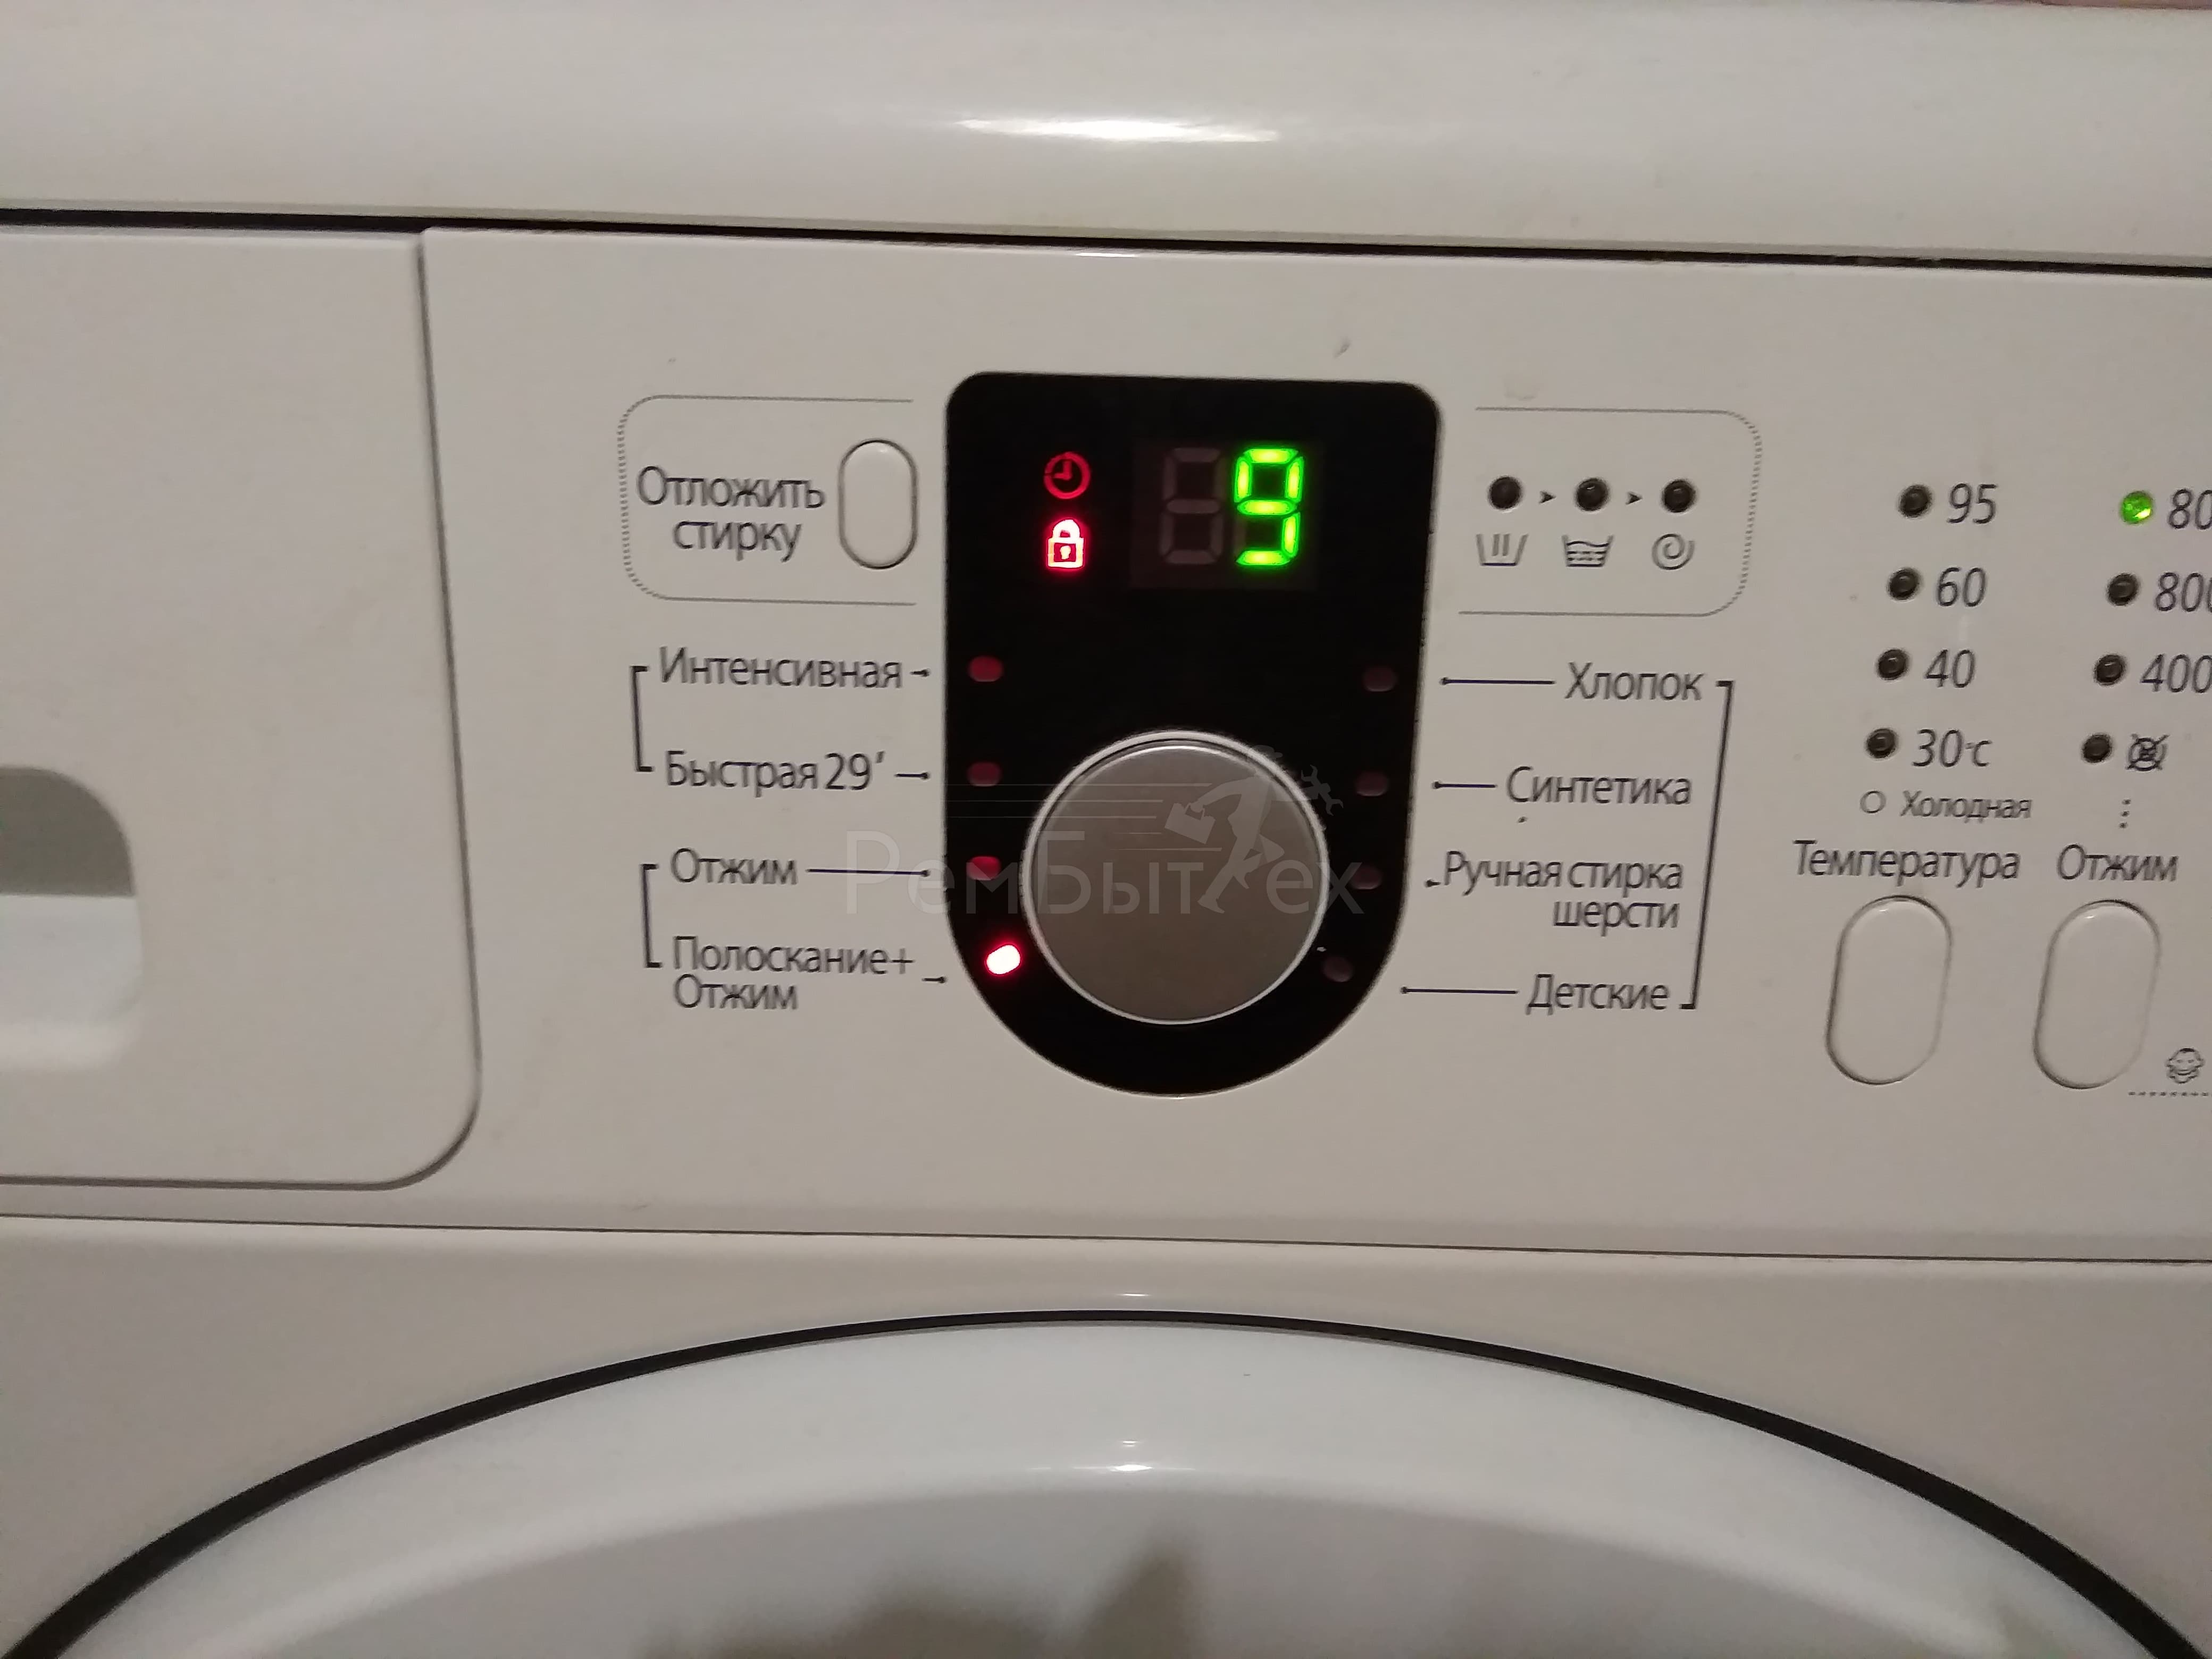 Как заменить подшипники в стиральной машине Беко